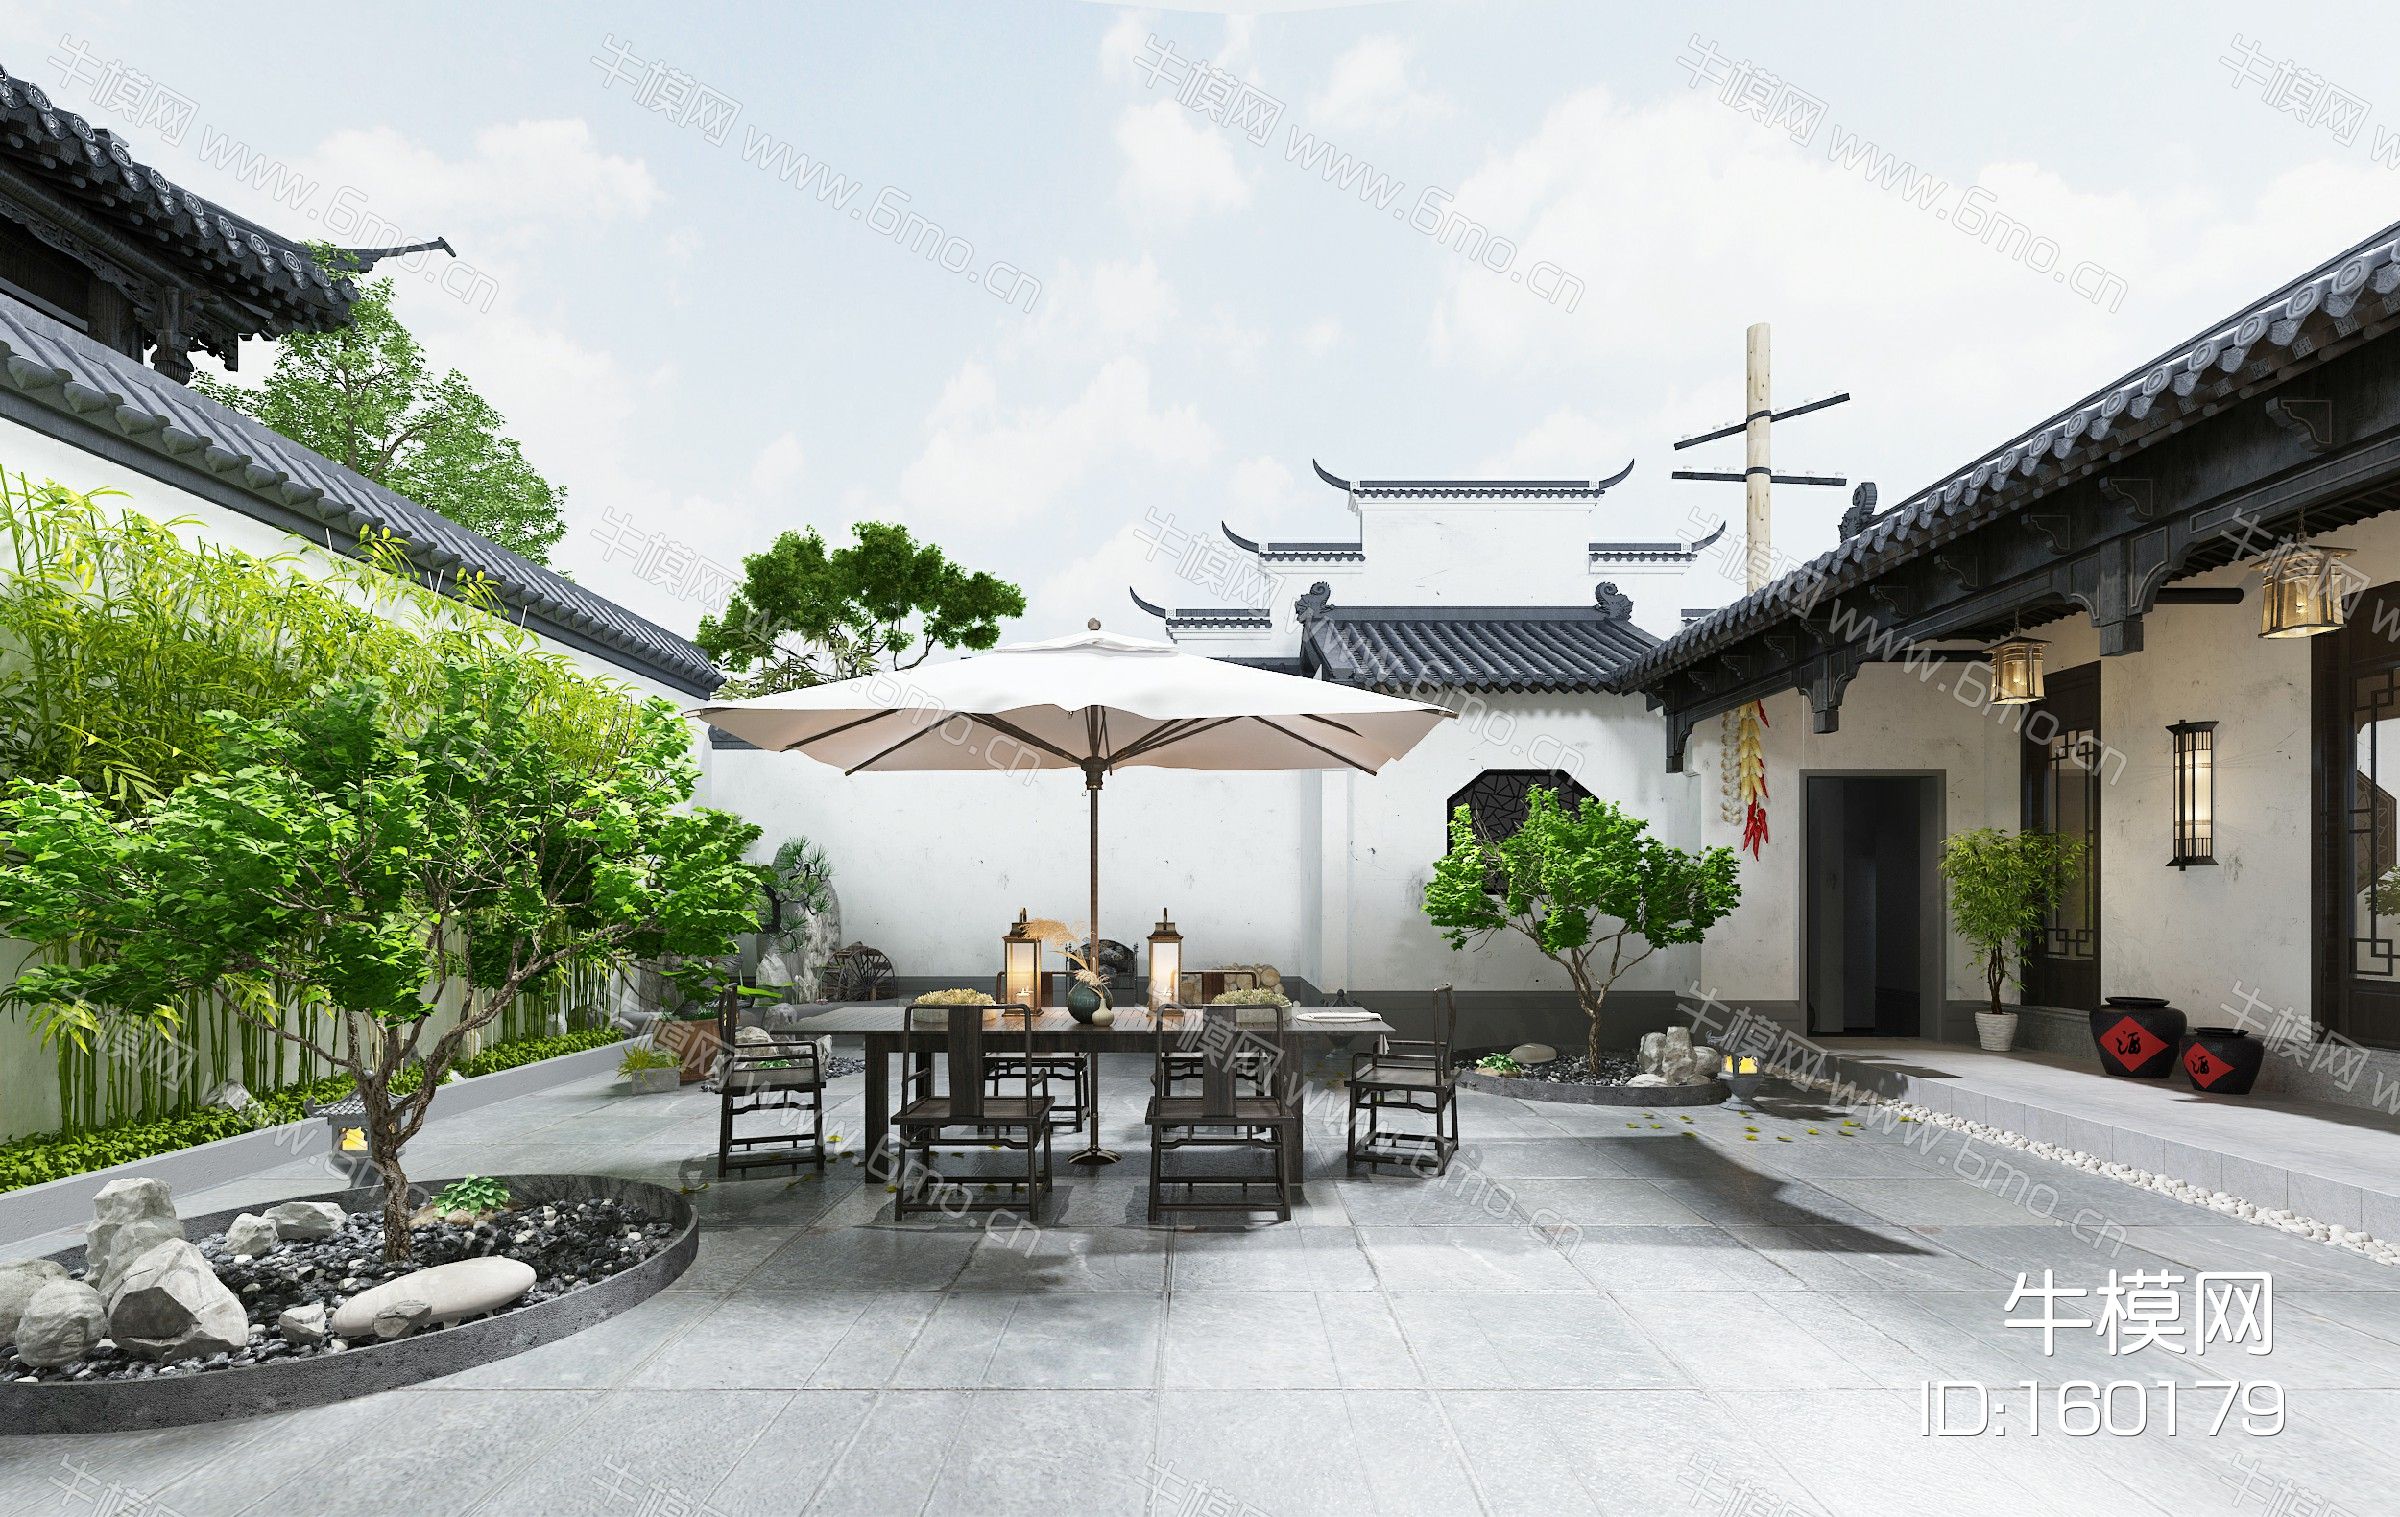 中式徽派建筑景观庭院